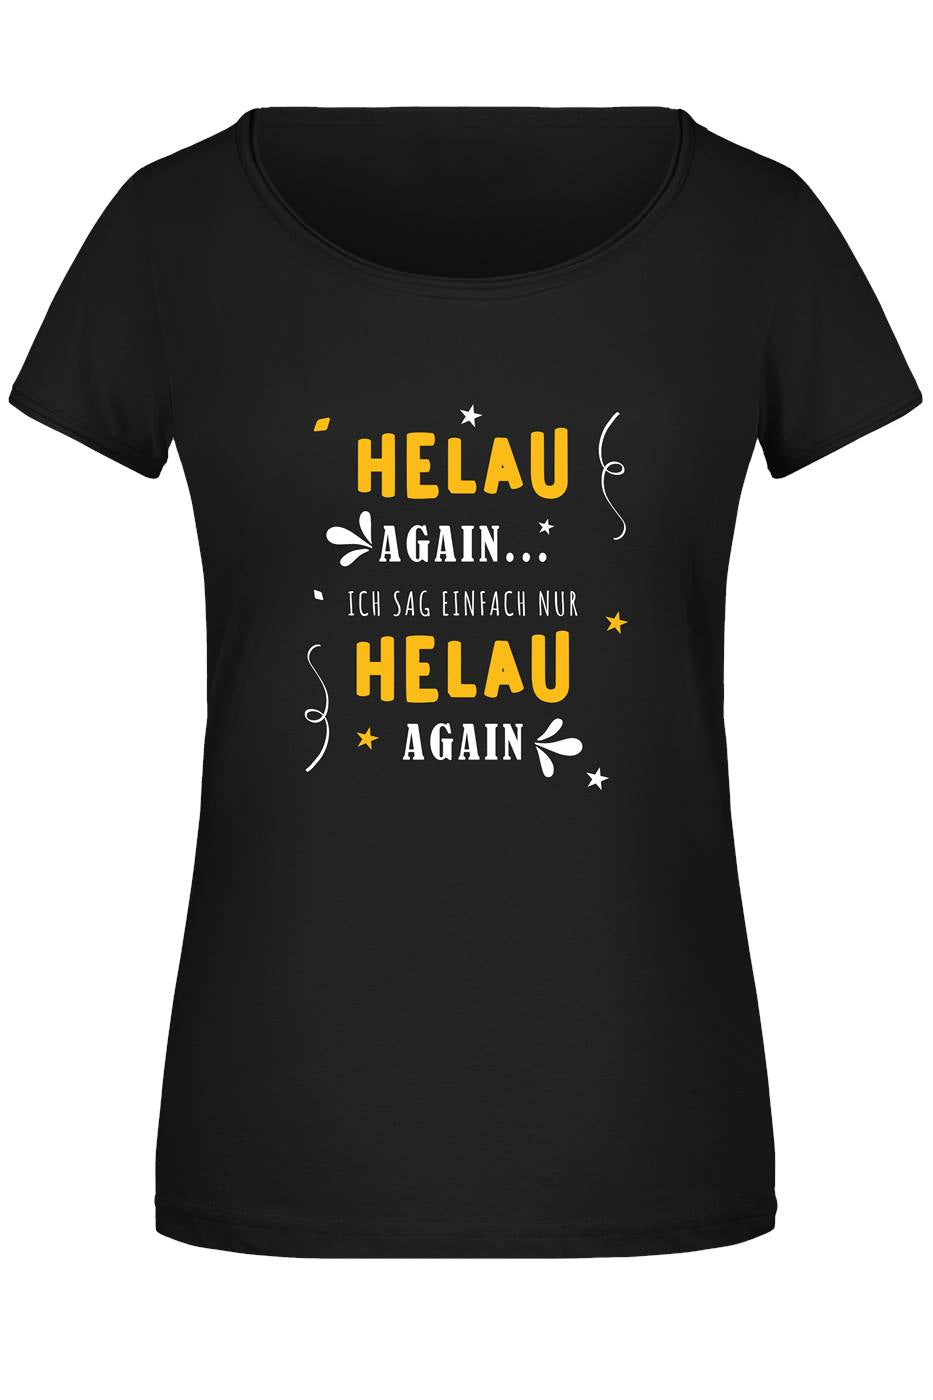 T-Shirt Damen - Helau again...